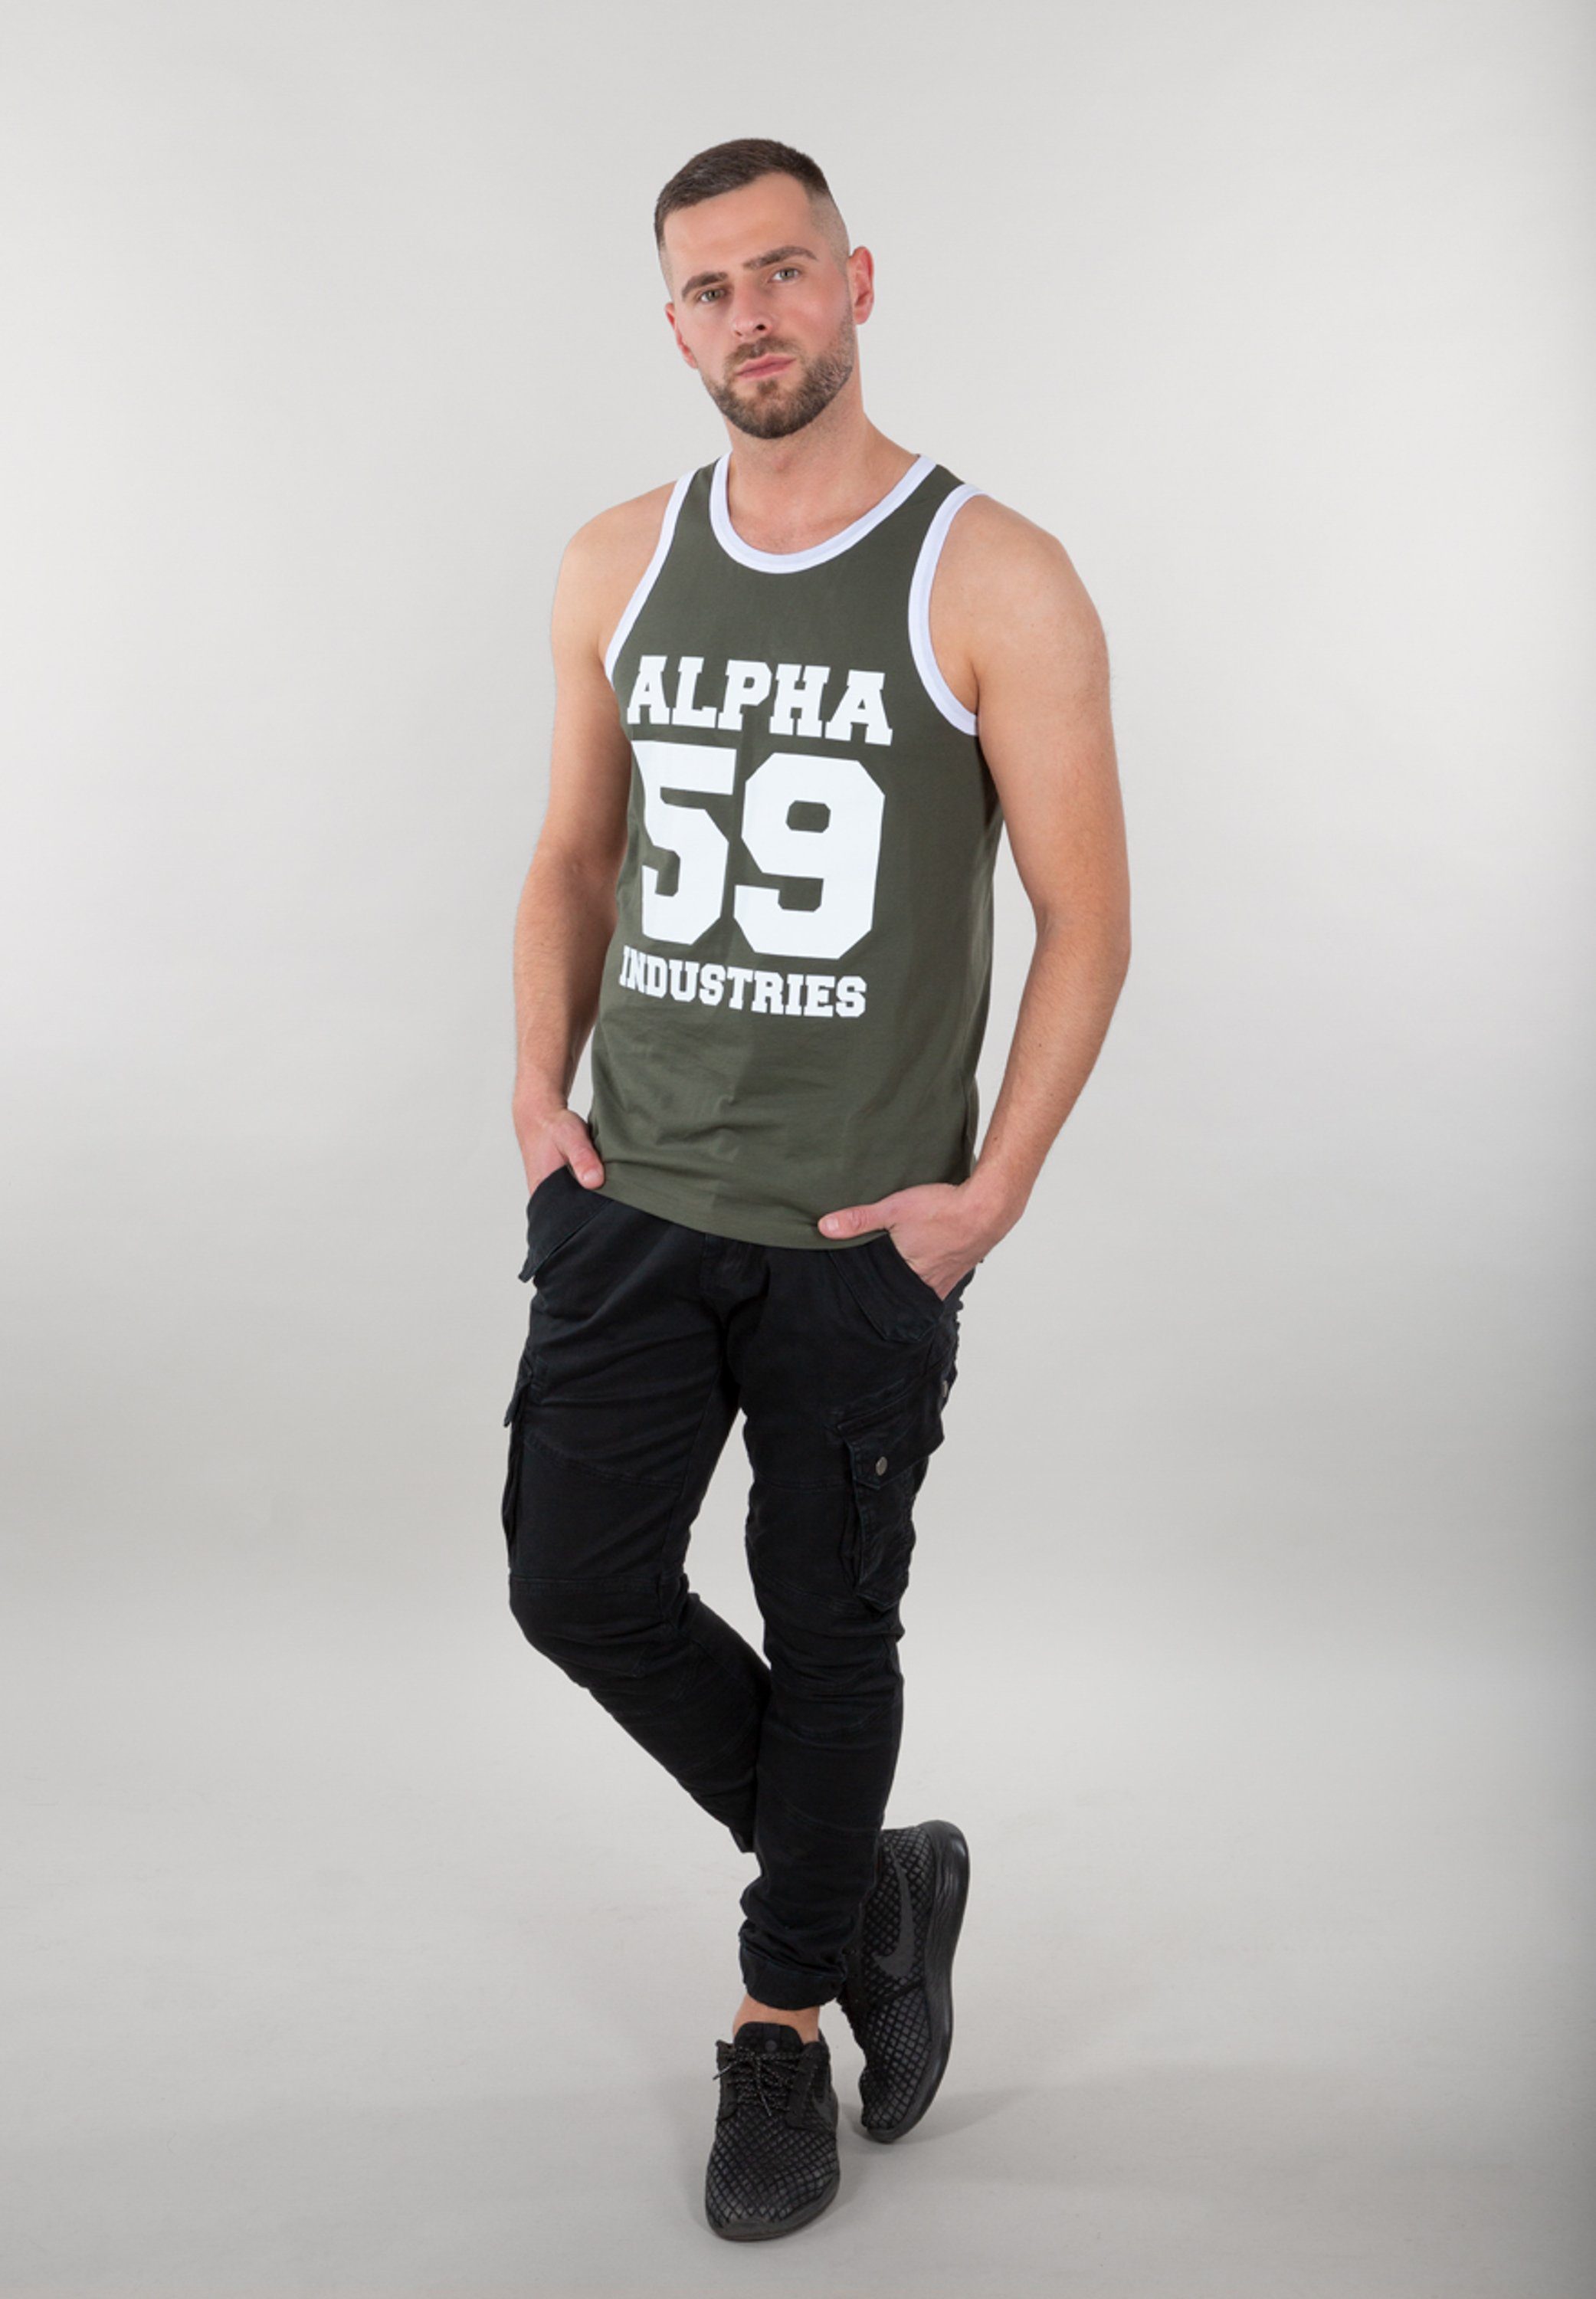 Alpha Industries Muscle-shirt Men Tank Tops 59 Tank